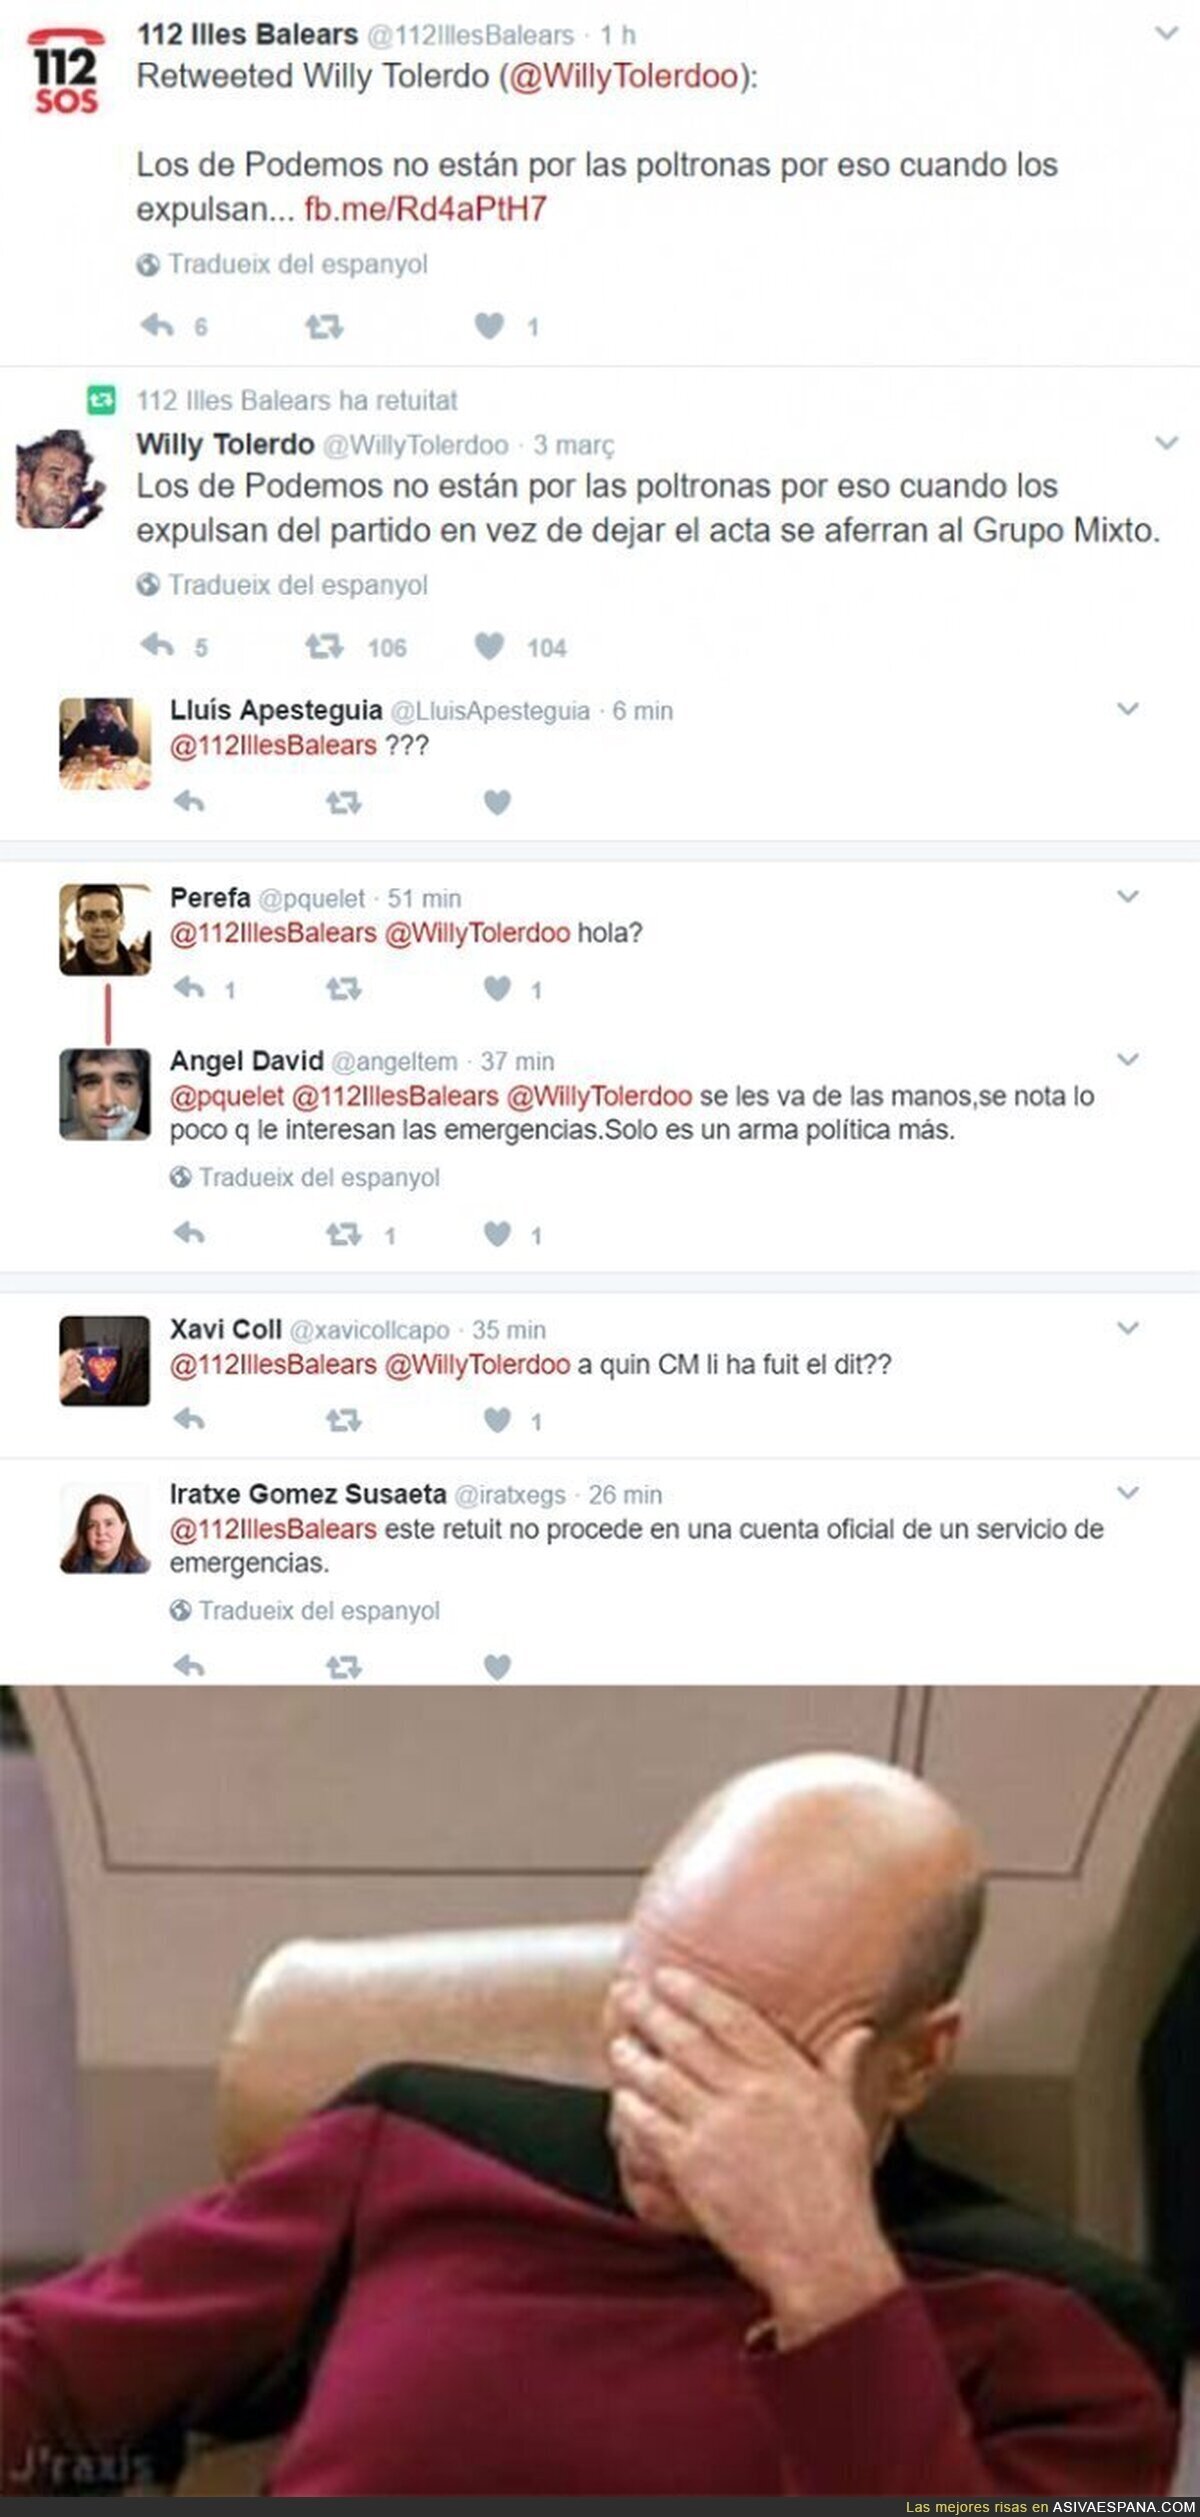 Los del 112 en Baleares muestran su odio contra Podemos retuiteando este mensaje